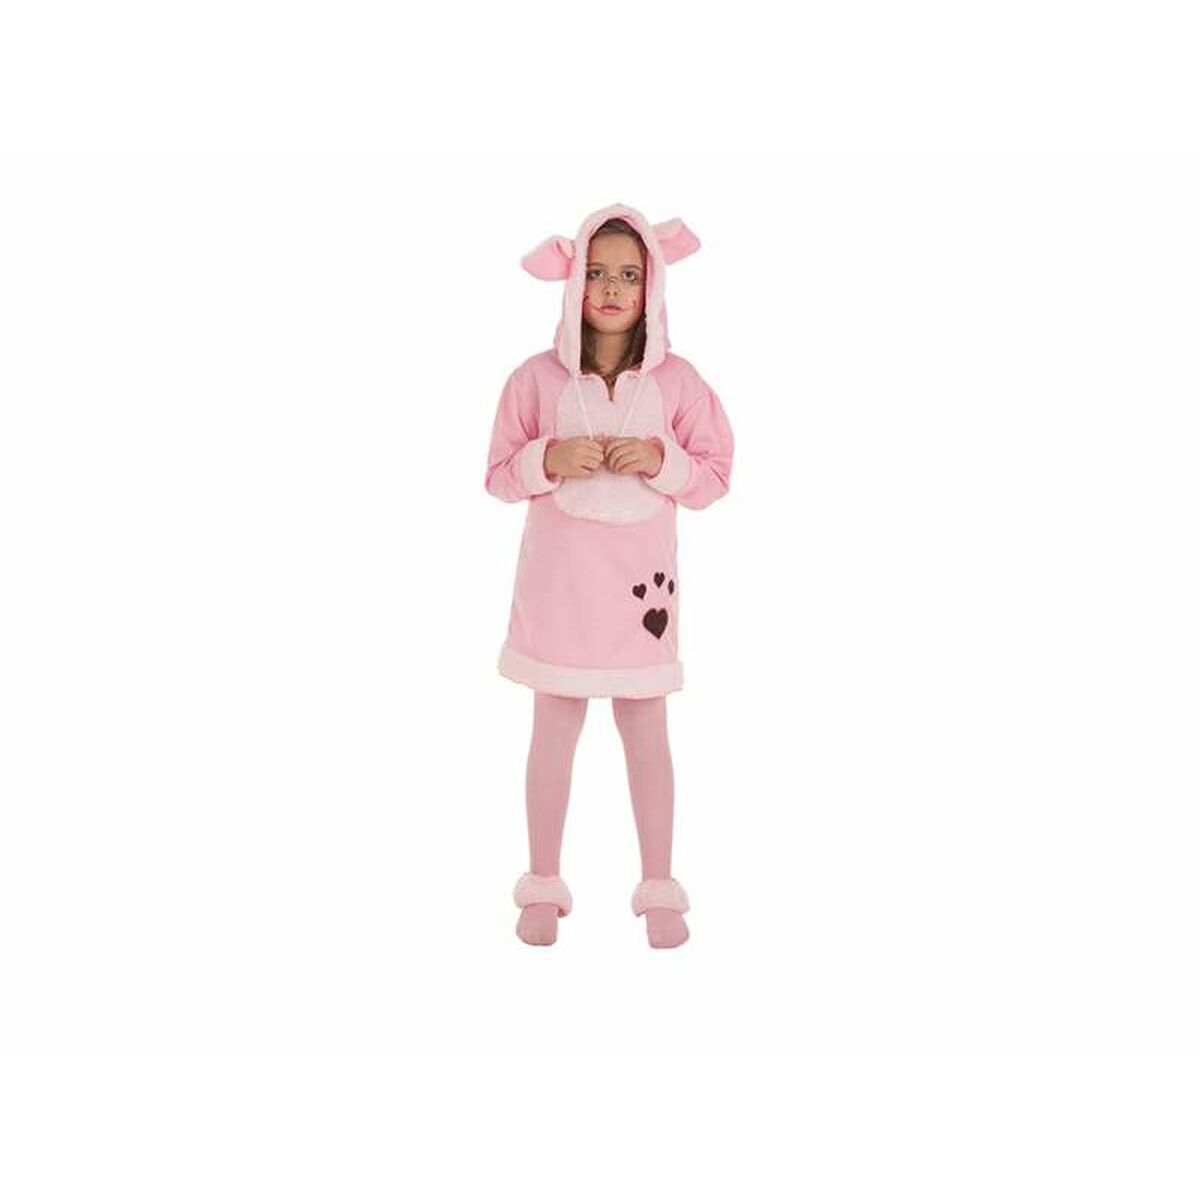 Costume for Children Pig